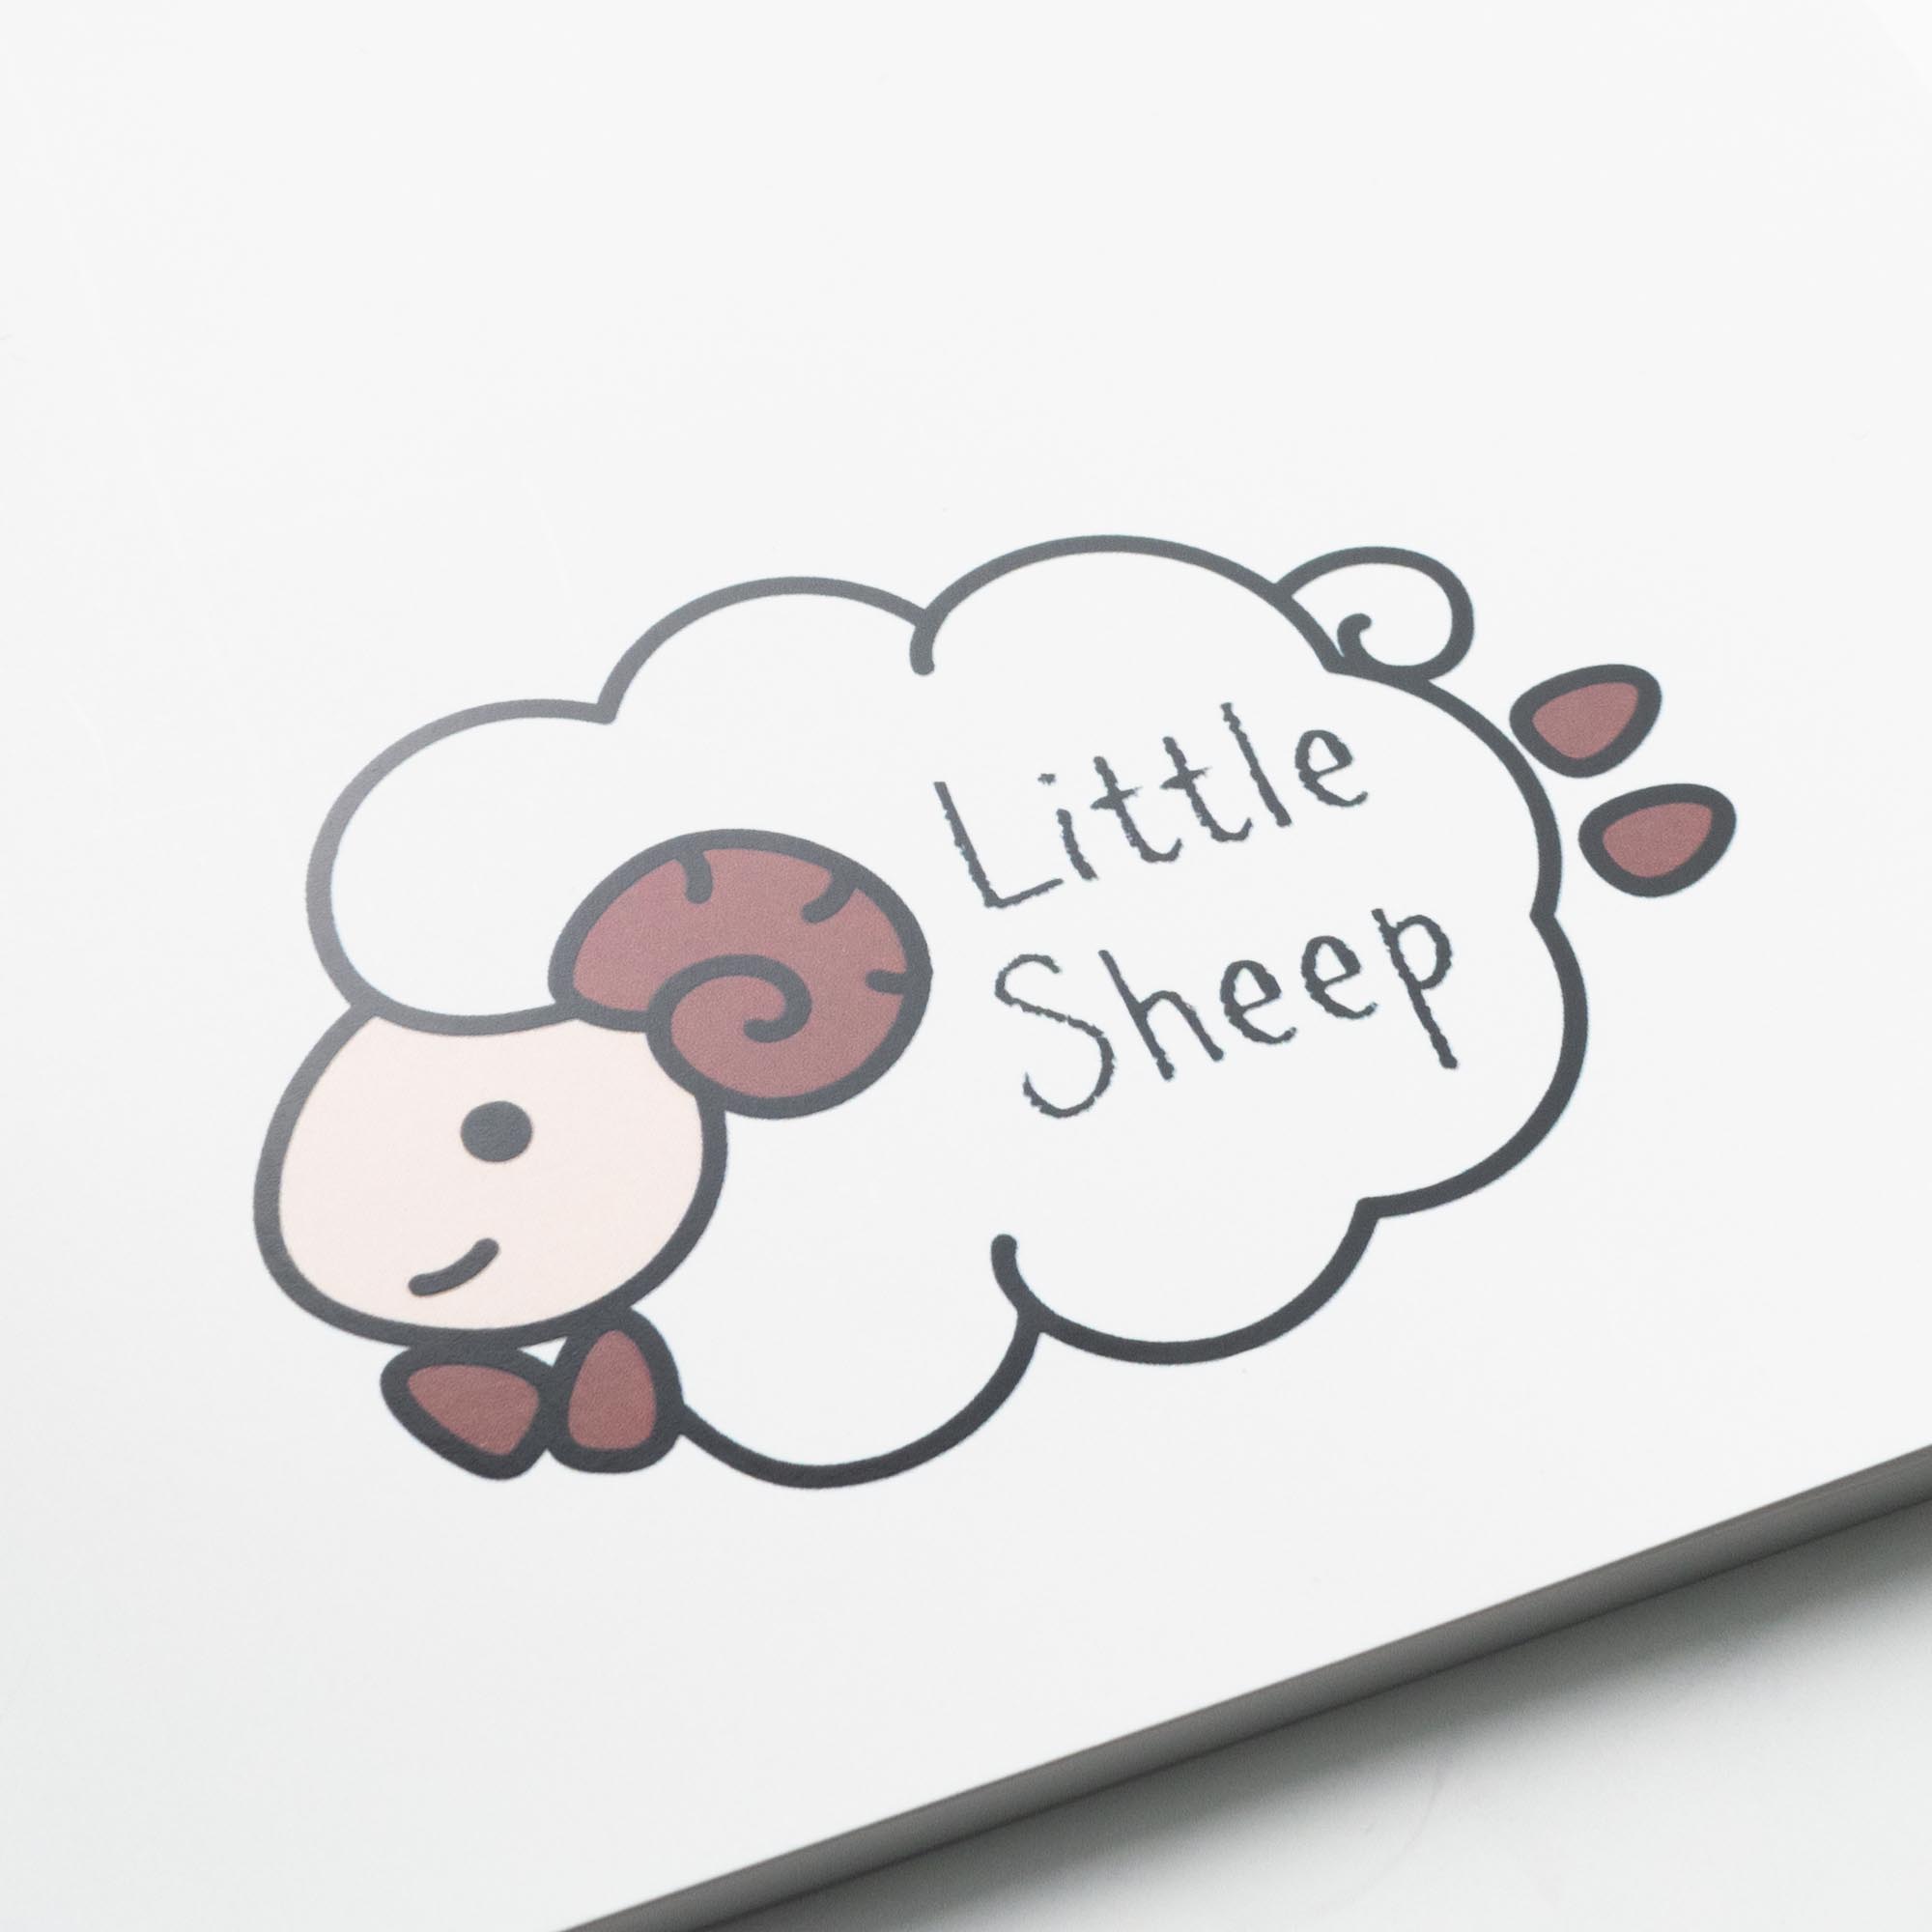 「こども英語教室Little Sheep English 様」製作のオリジナルノート ギャラリー写真2